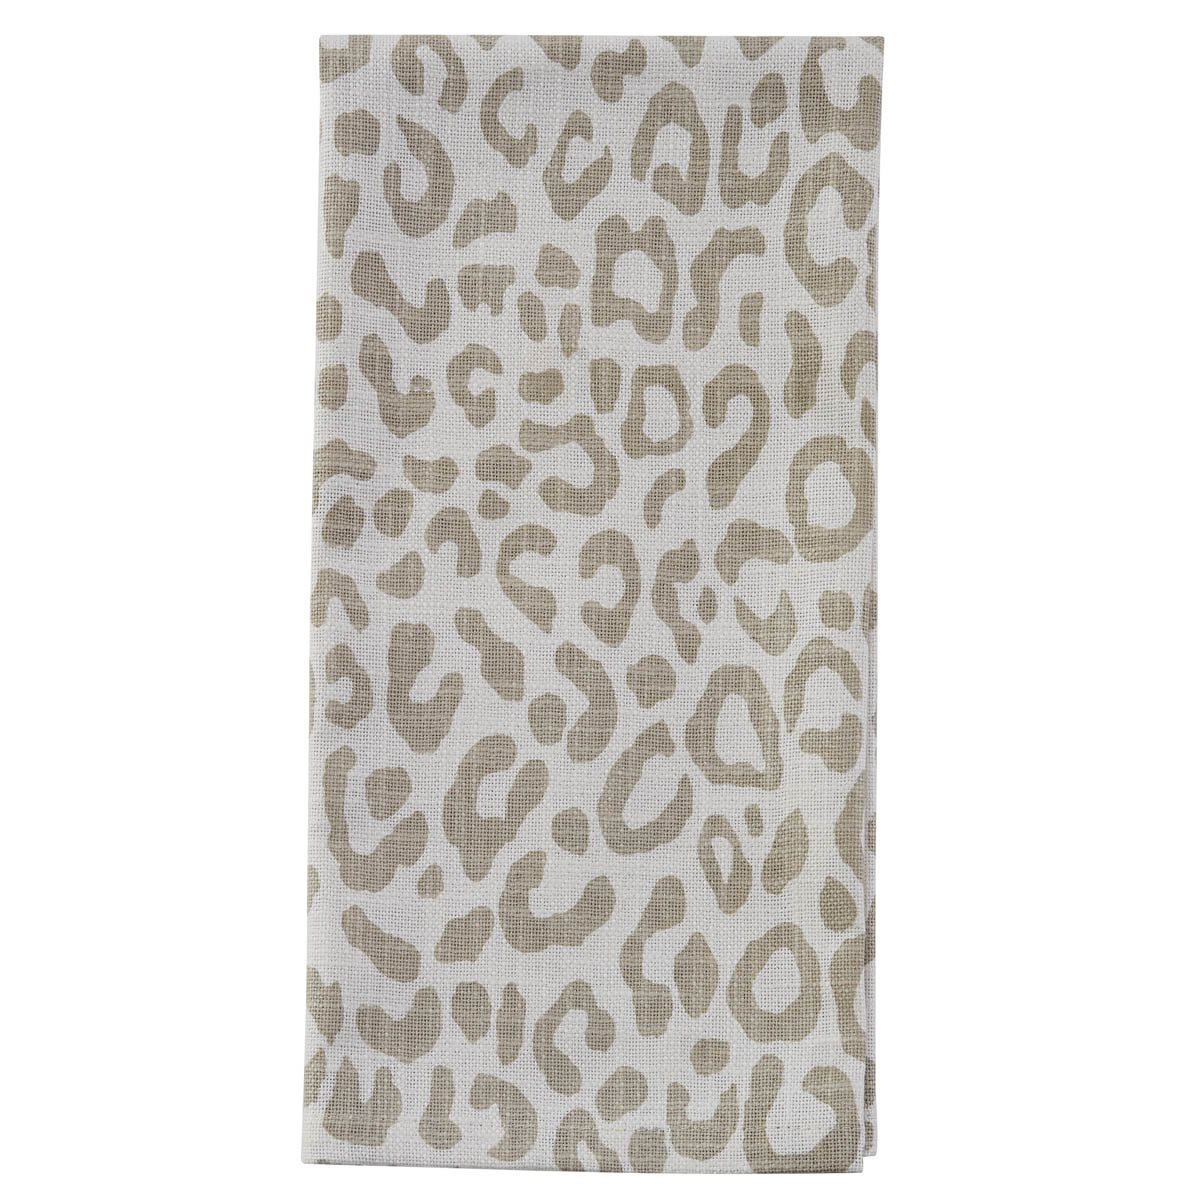 Safari Leopard Printed Towel - Natural